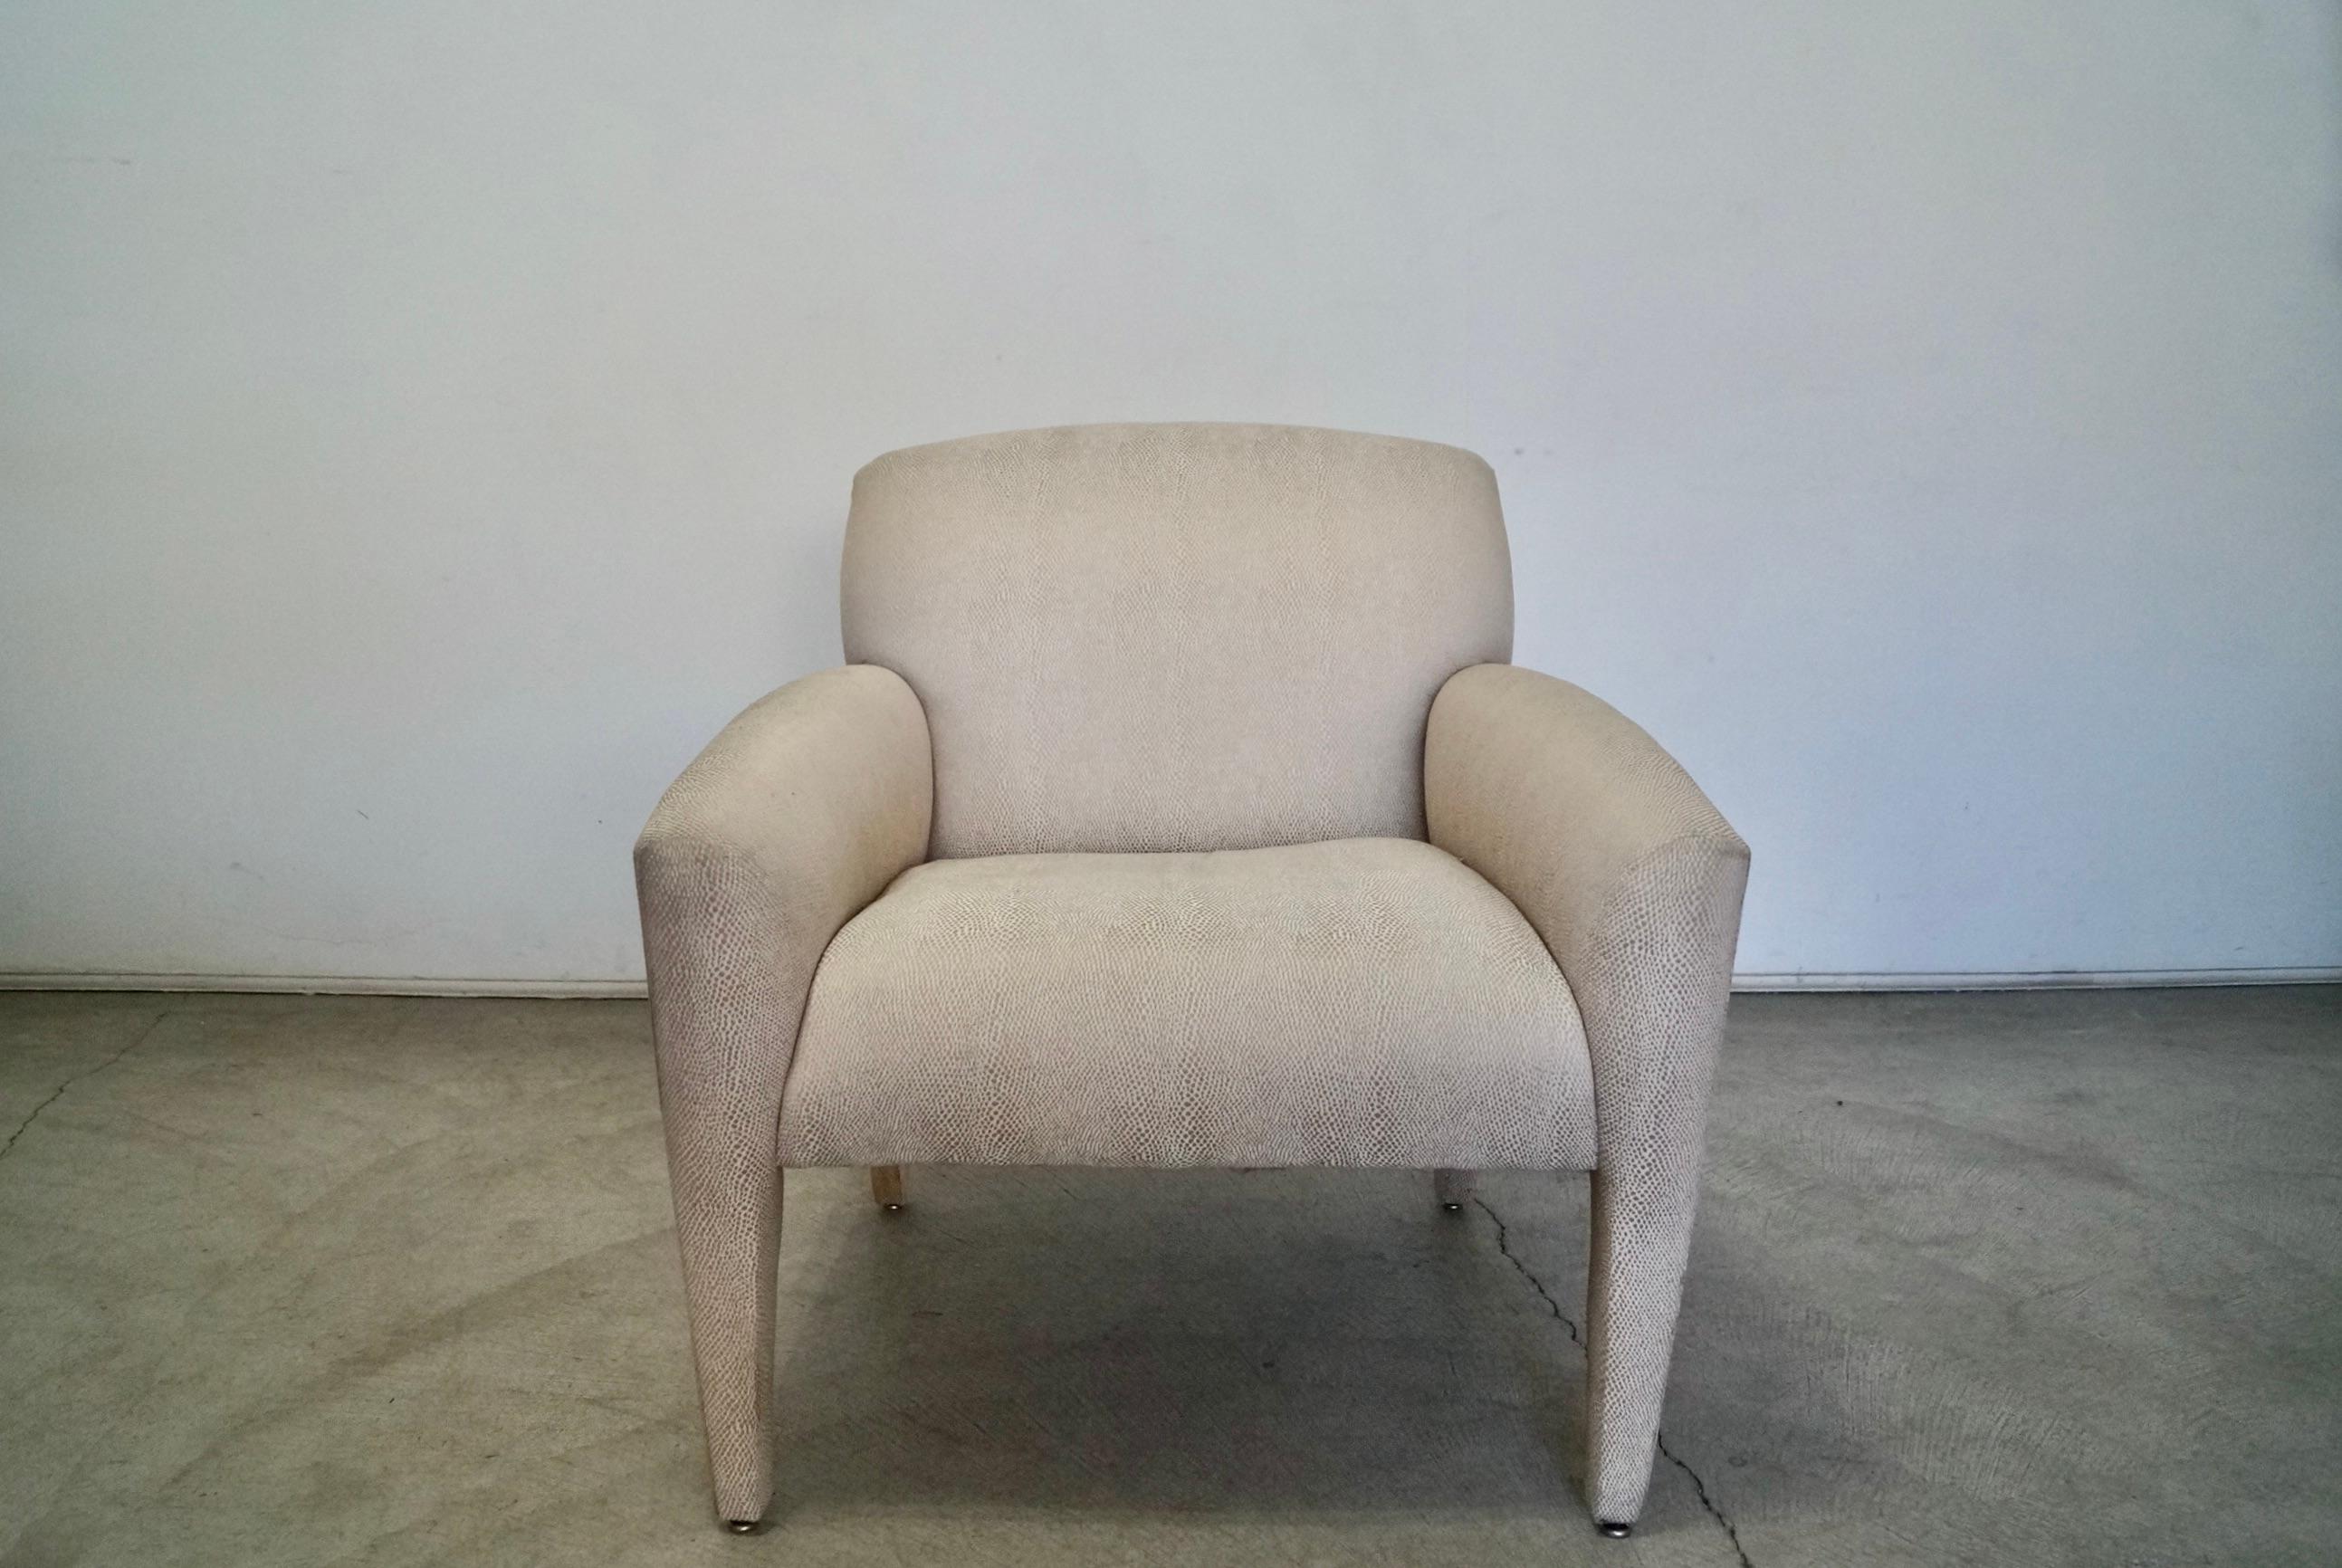 Vintage postmoderner Stuhl aus den 1980er Jahren zu verkaufen. Entworfen von Vladimir Kagan für Preview, muss neu gepolstert werden. Großartiges Kagan Design und Stil mit klaren Linien. Sehr bequem und sehr gut verarbeitet. Hat Gurtband auf dem Sitz